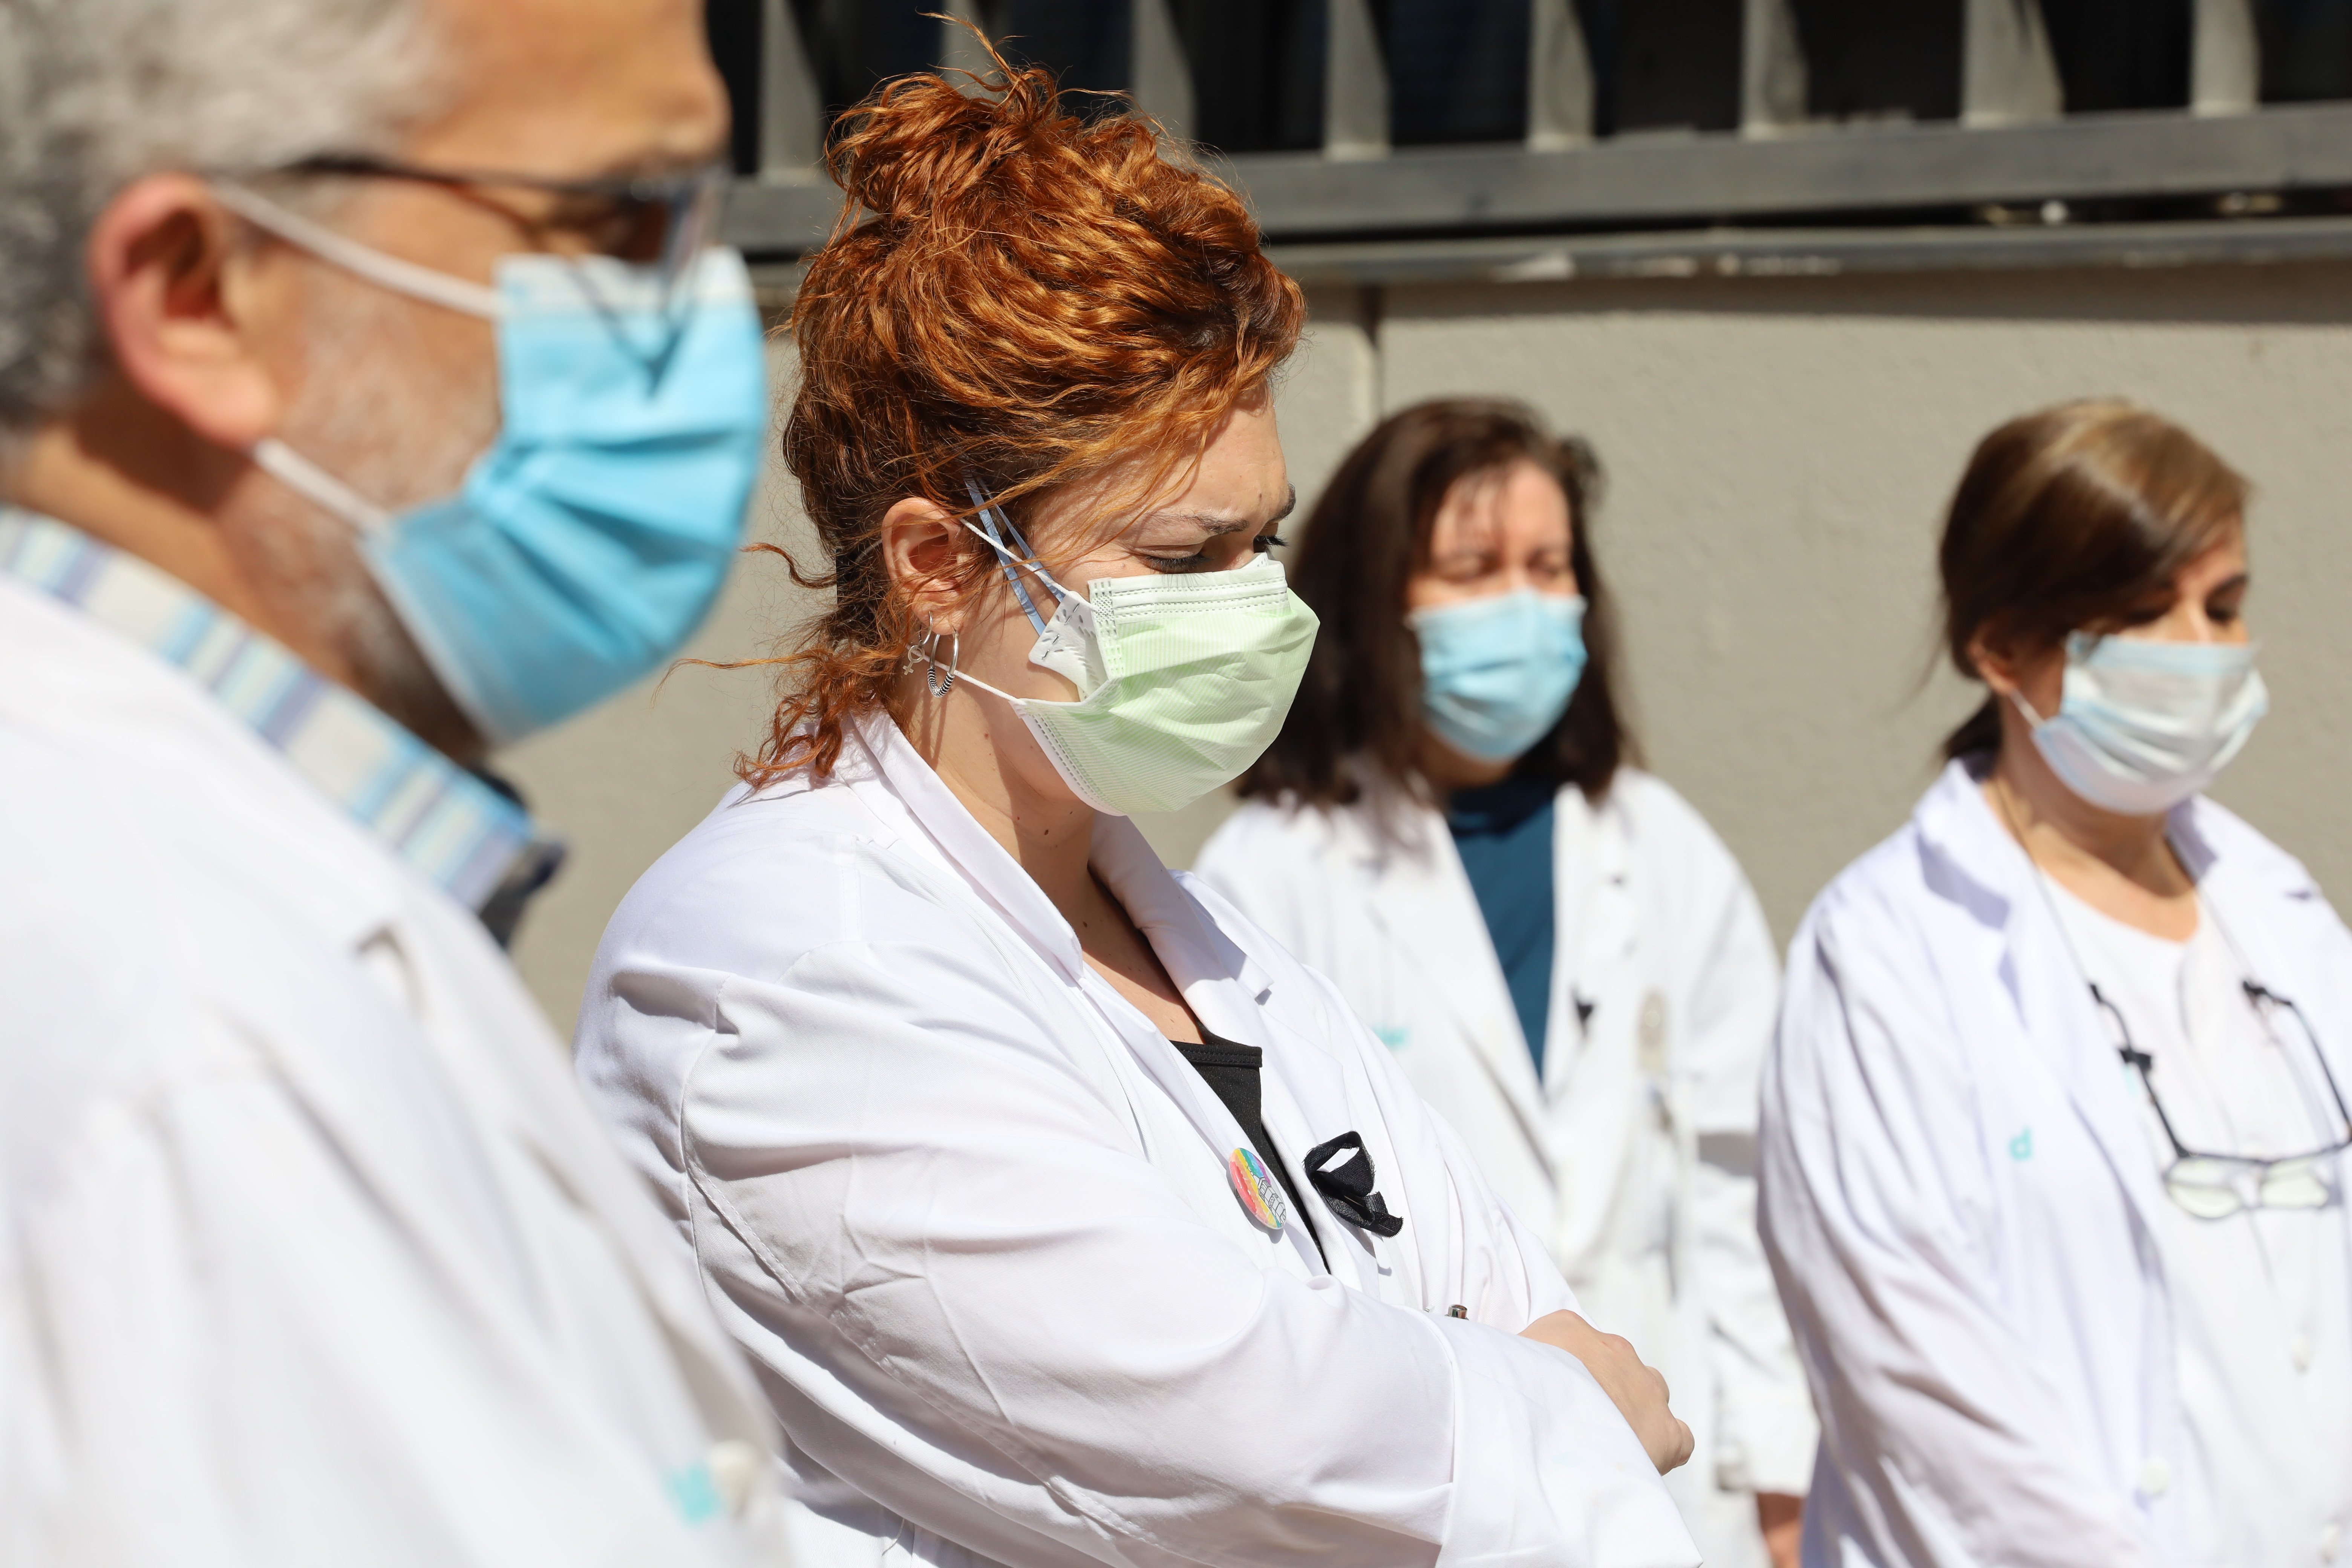 El 52% de los médicos han vivido conflictos éticos durante la pandemia